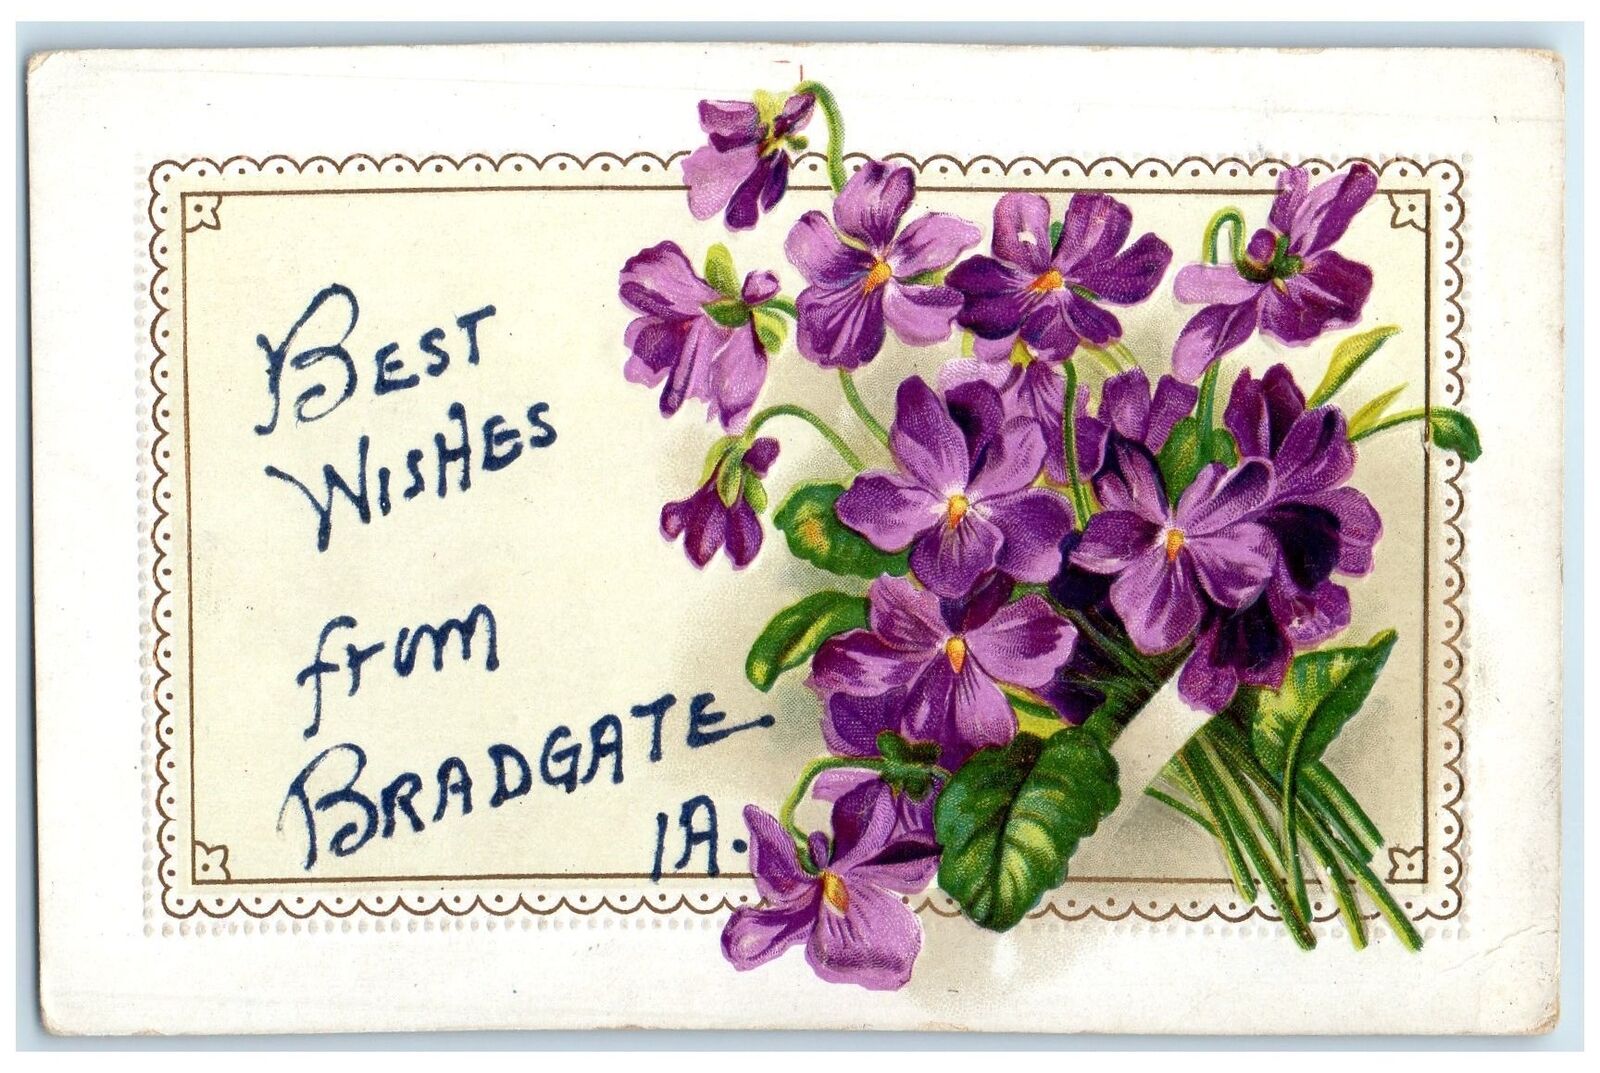 1910 Best Wishes From Bradgate Bunch Of Flower Iowa IA Correspondence Postcard